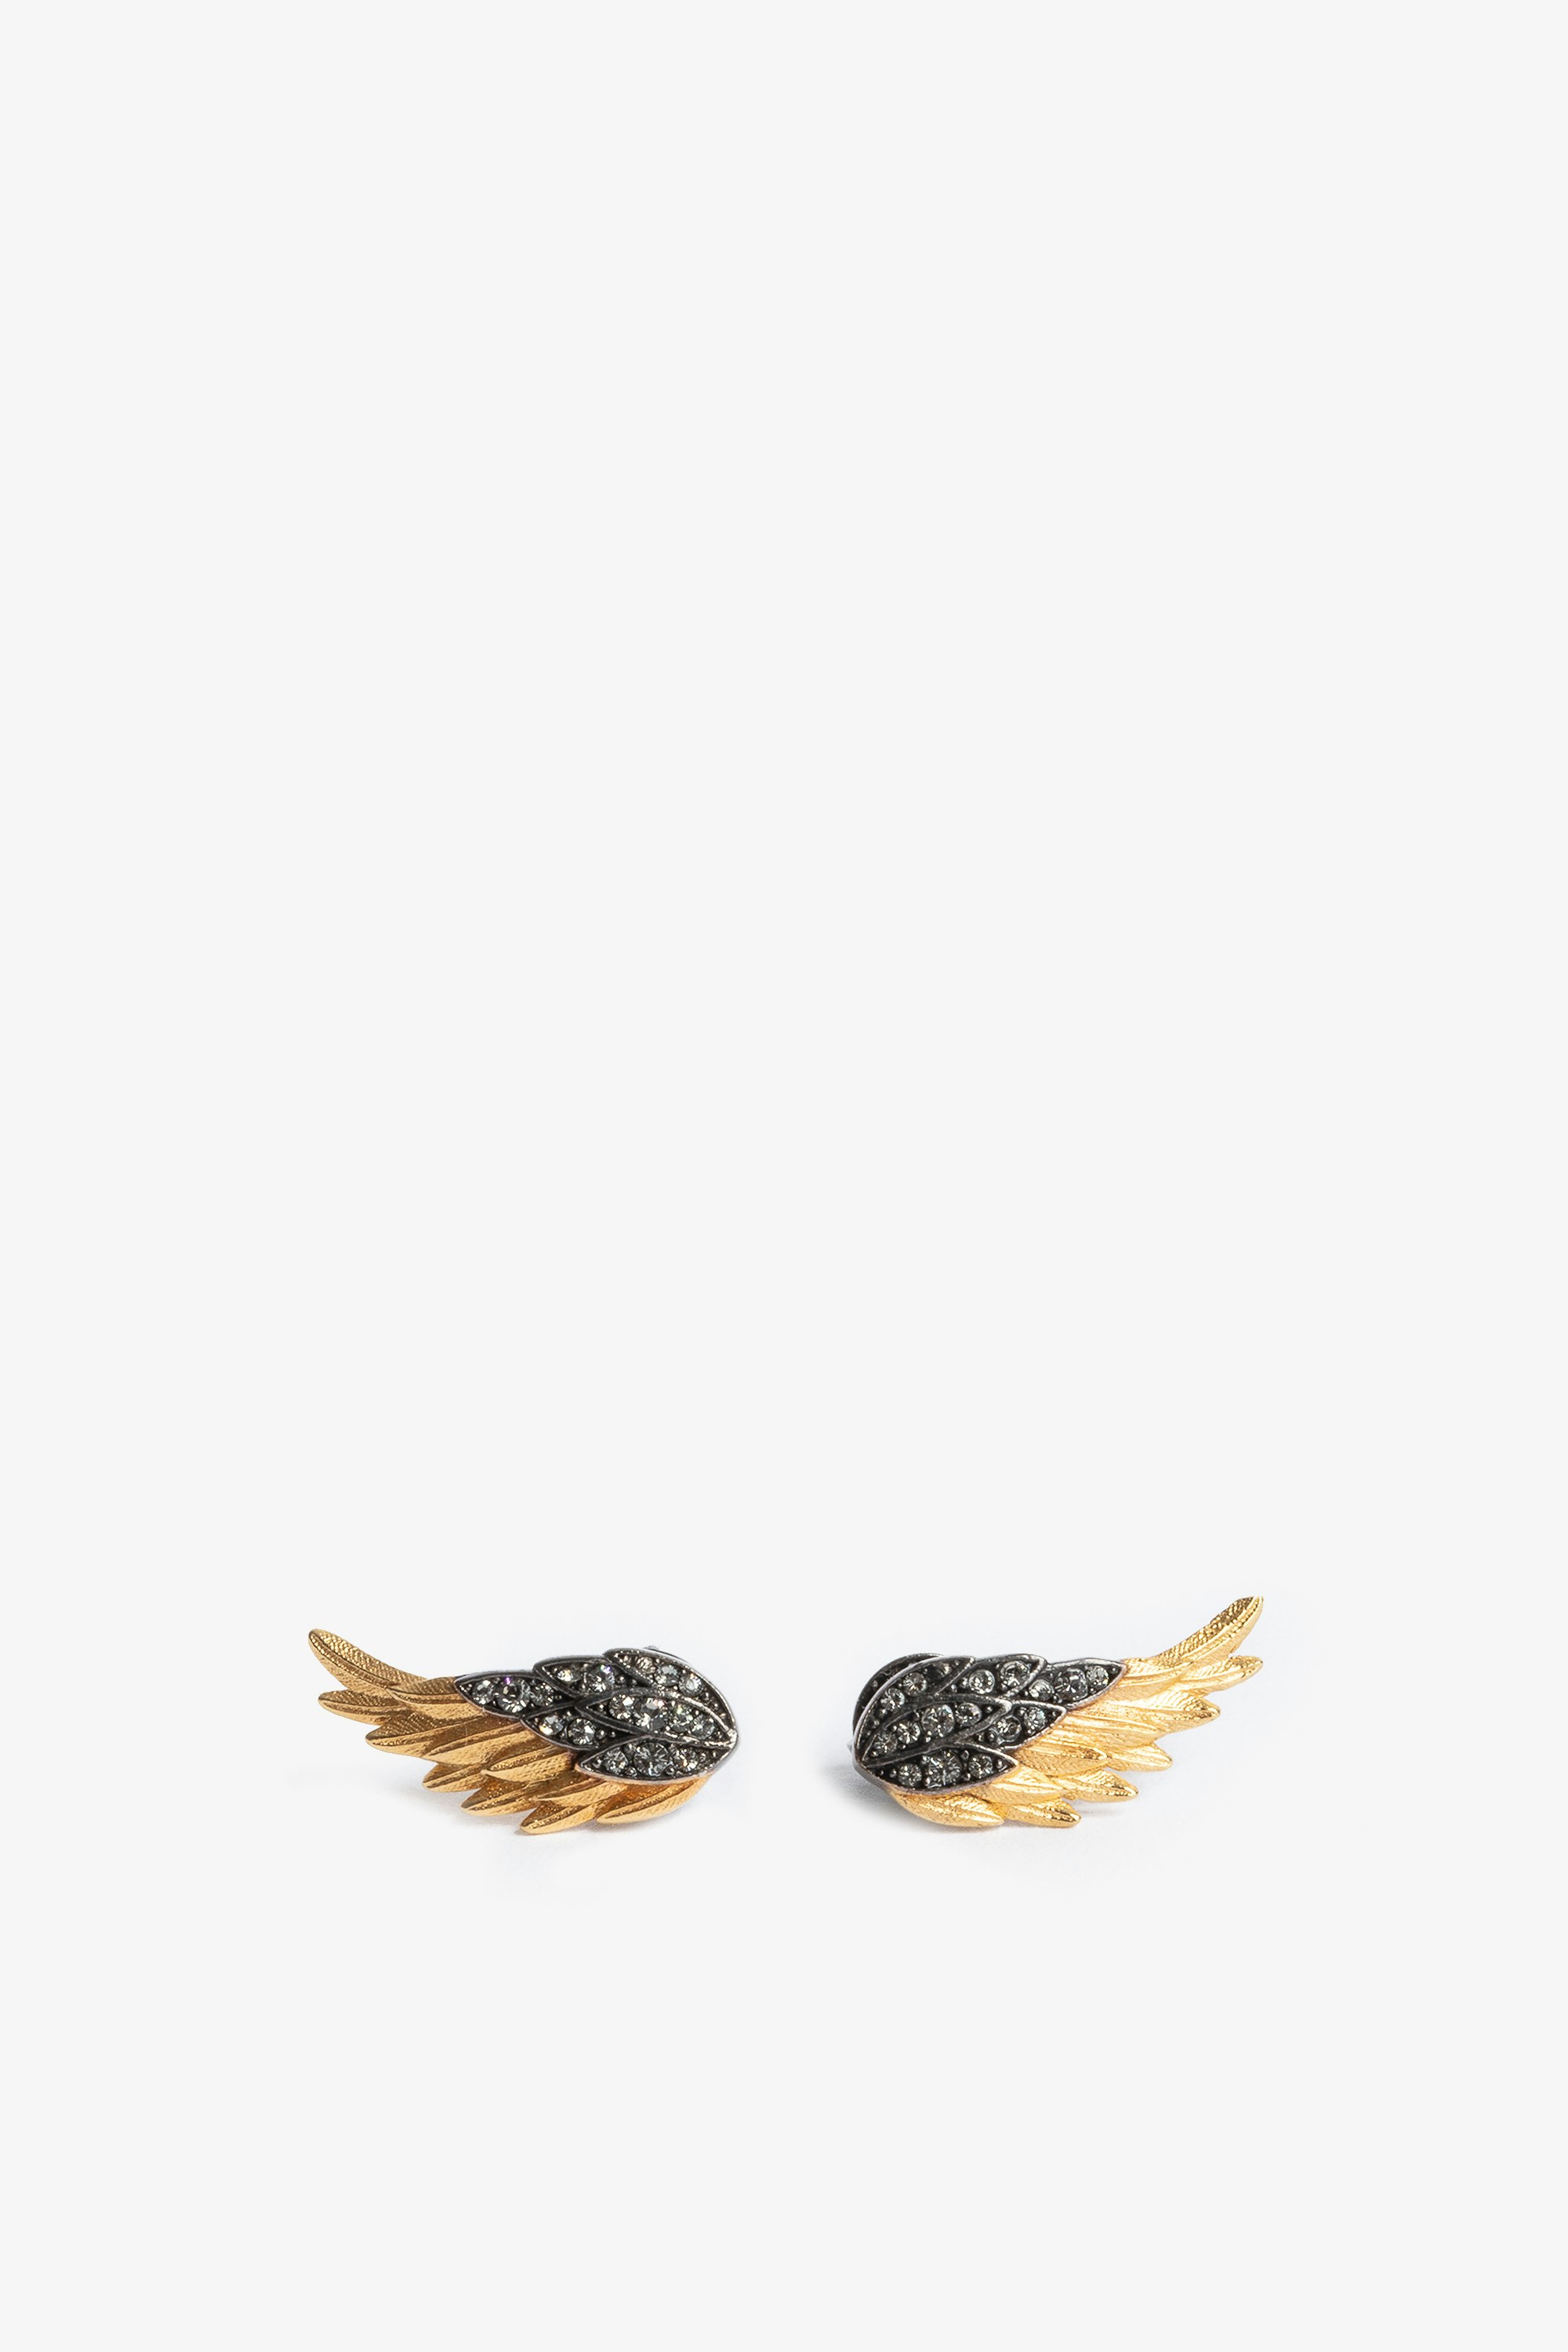 Pendientes Rock Feather - Pendientes en forma de alas de latón ennegrecido y dorado con cristales engastados.